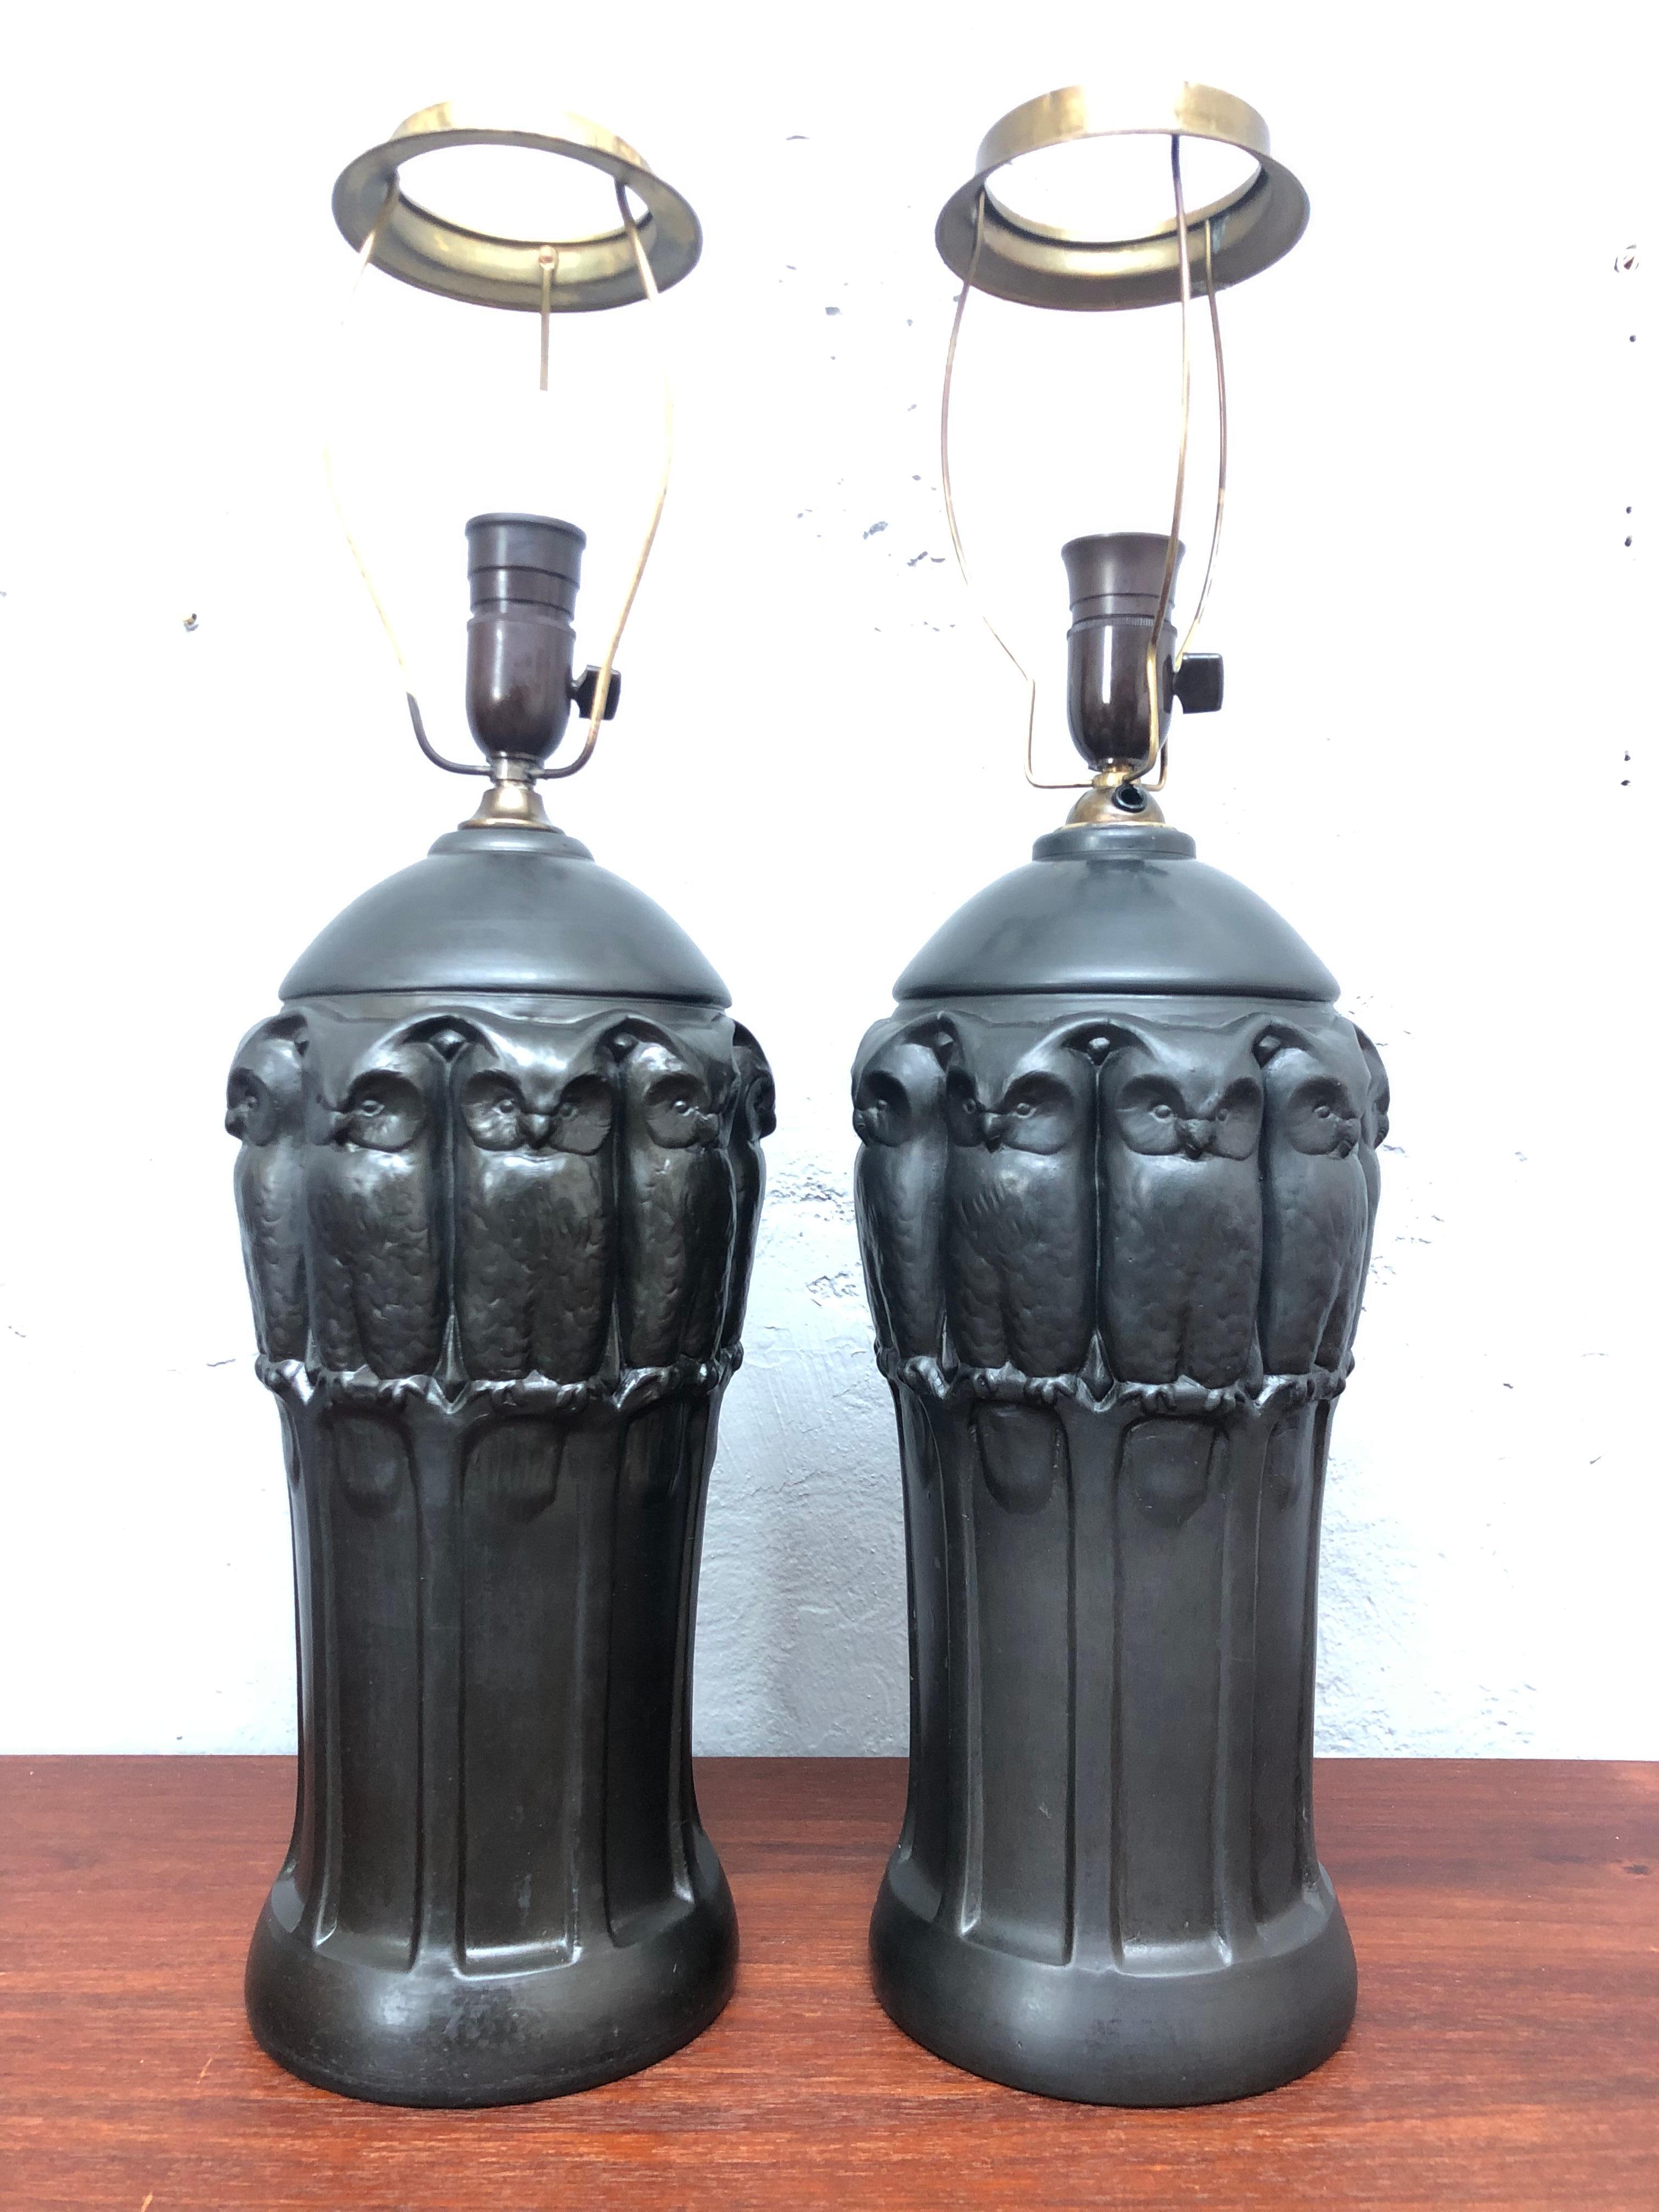 Une étonnante paire de lampes de table en poterie noire avec des hiboux par Lauritz Adolph Hjorth de Bornholm au Danemark.
Les lampes ont été recâblées avec un câble en tissu torsadé noir et isolé à l'endroit où il passe à travers le collier en